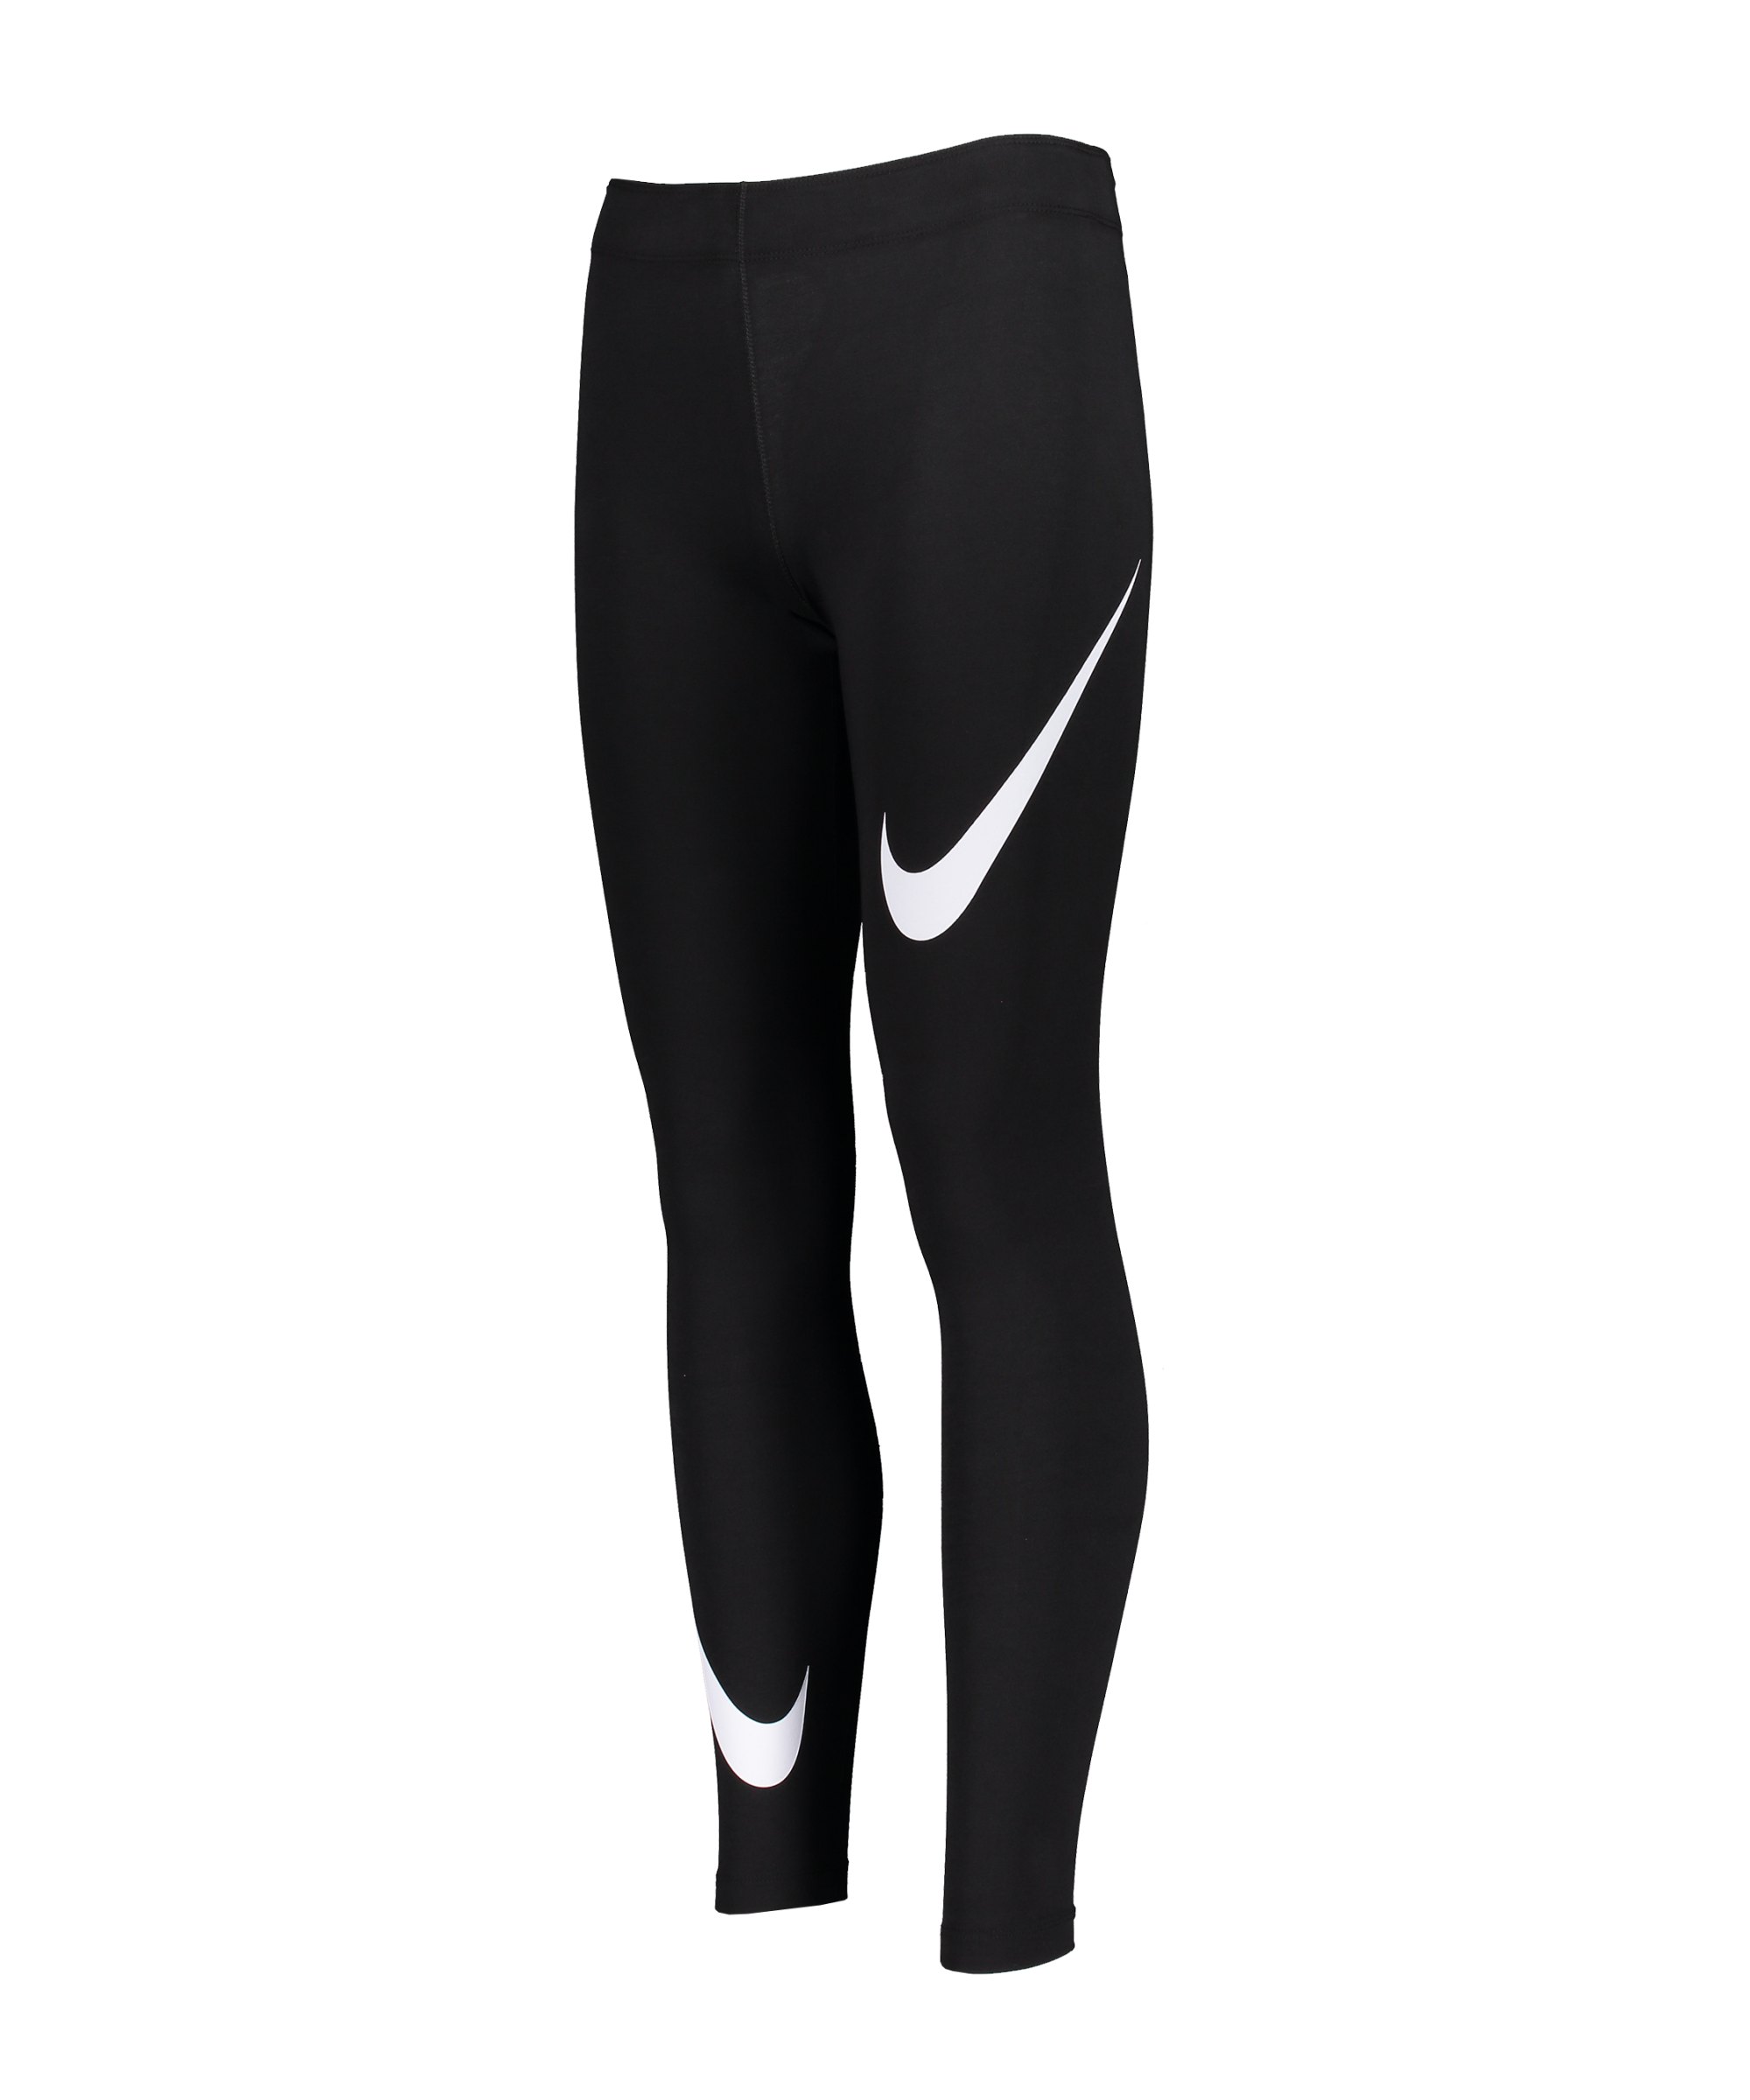 Nike Sportswear Leggings Damen Schwarz F010 - schwarz